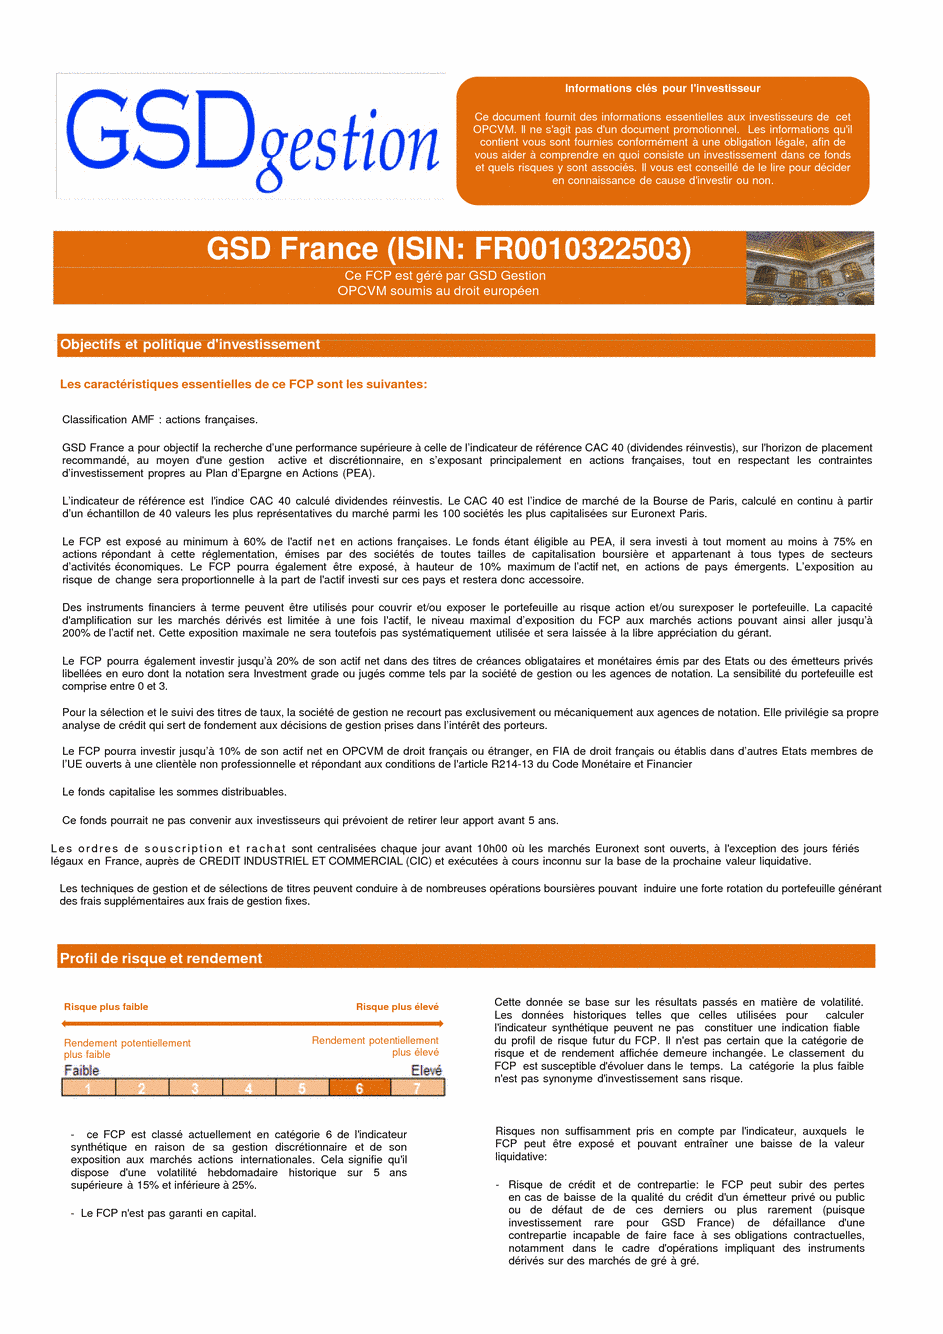 DICI-Prospectus Complet GSD France - 06/09/2016 - Français